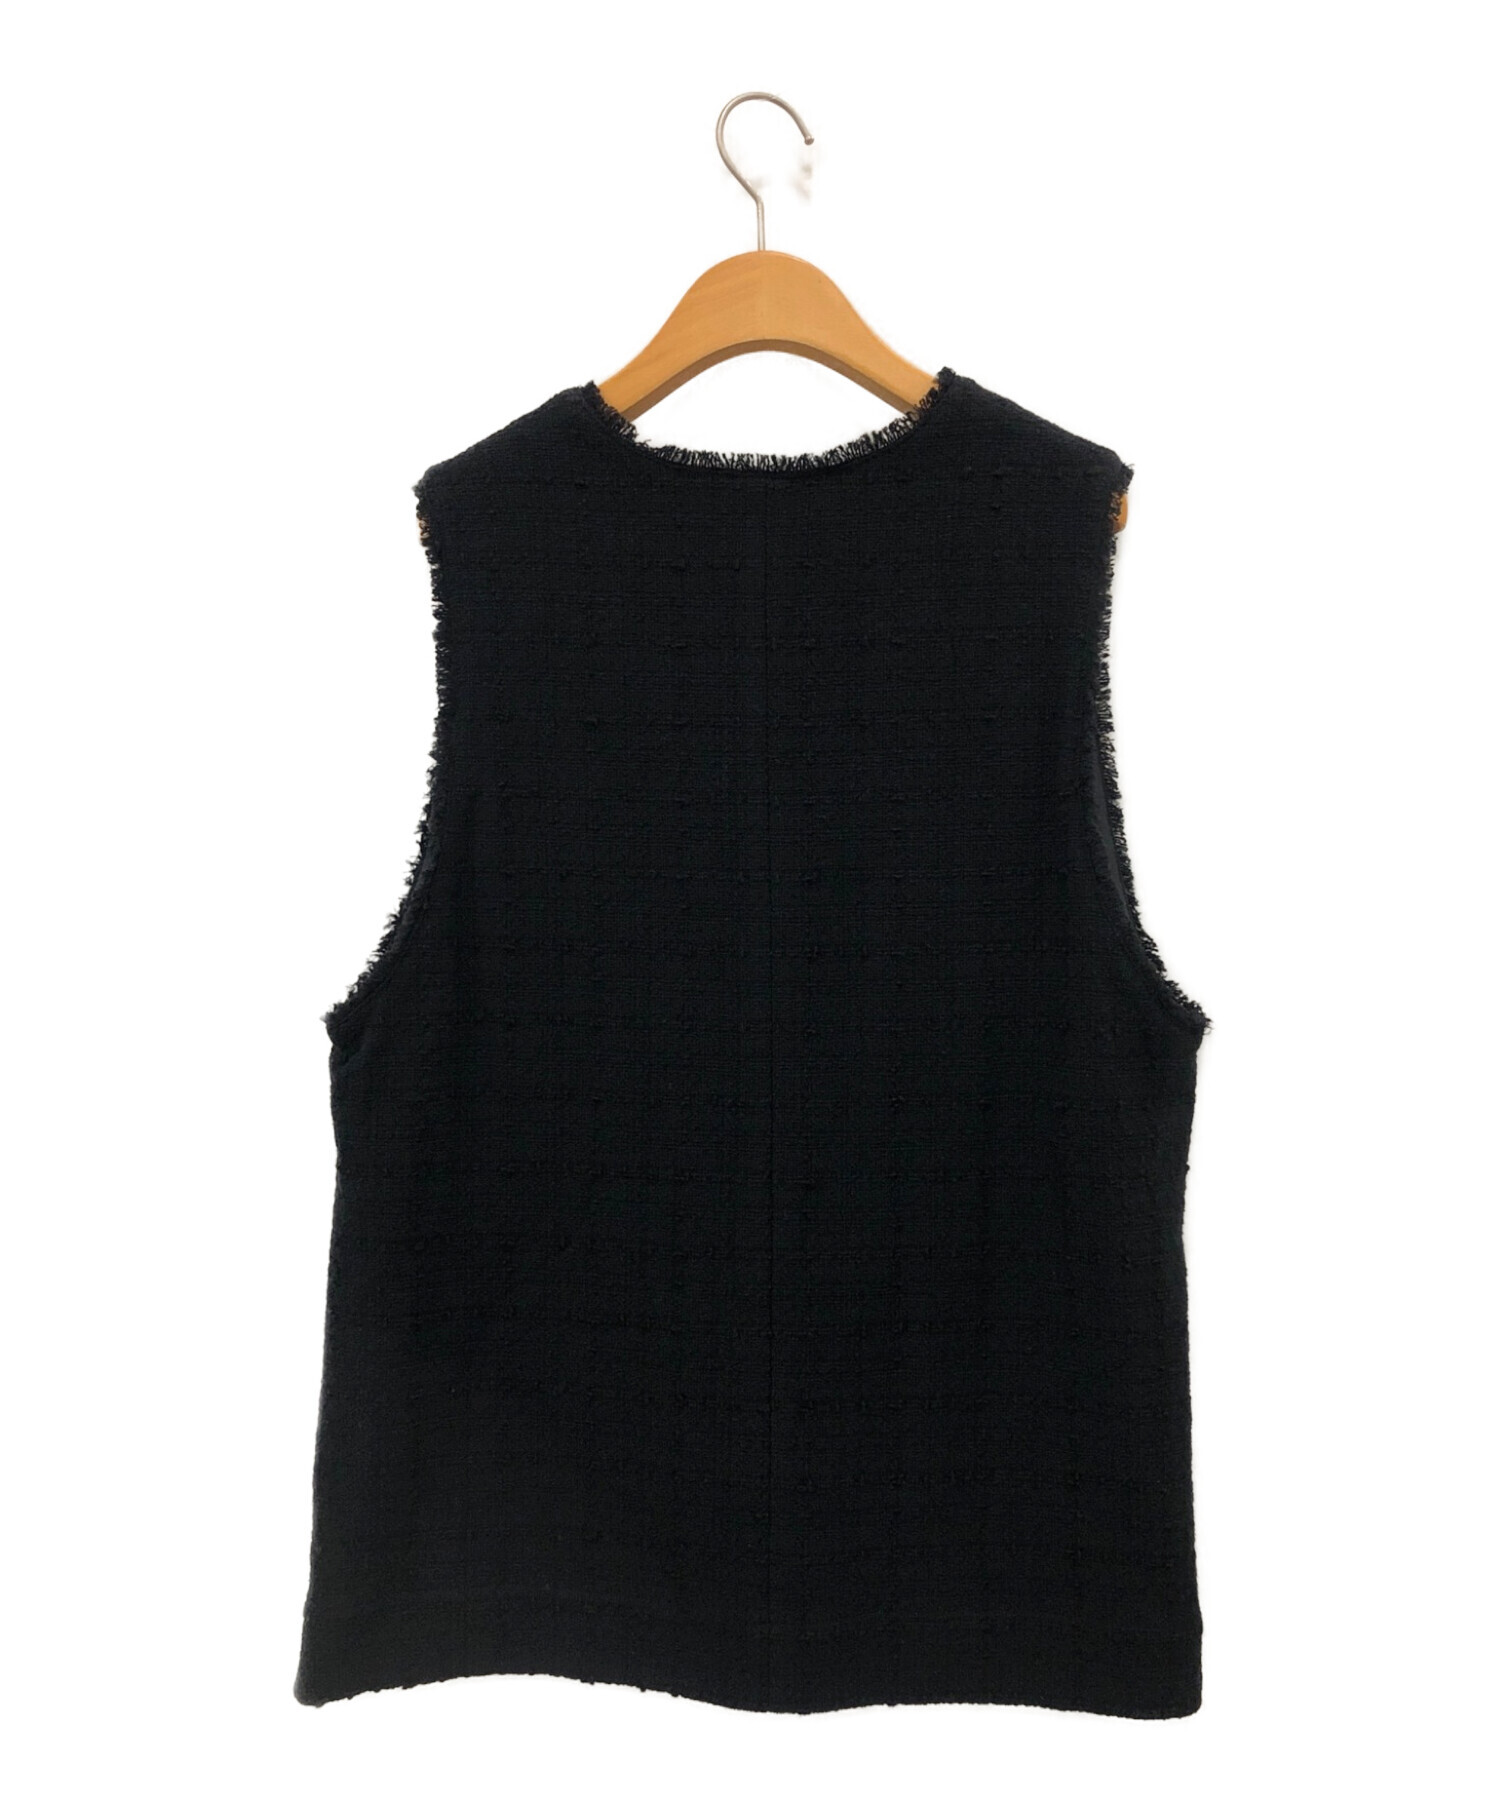 Spick and Span (スピックアンドスパン) Italian fabric ツイードベスト ブラック サイズ:-